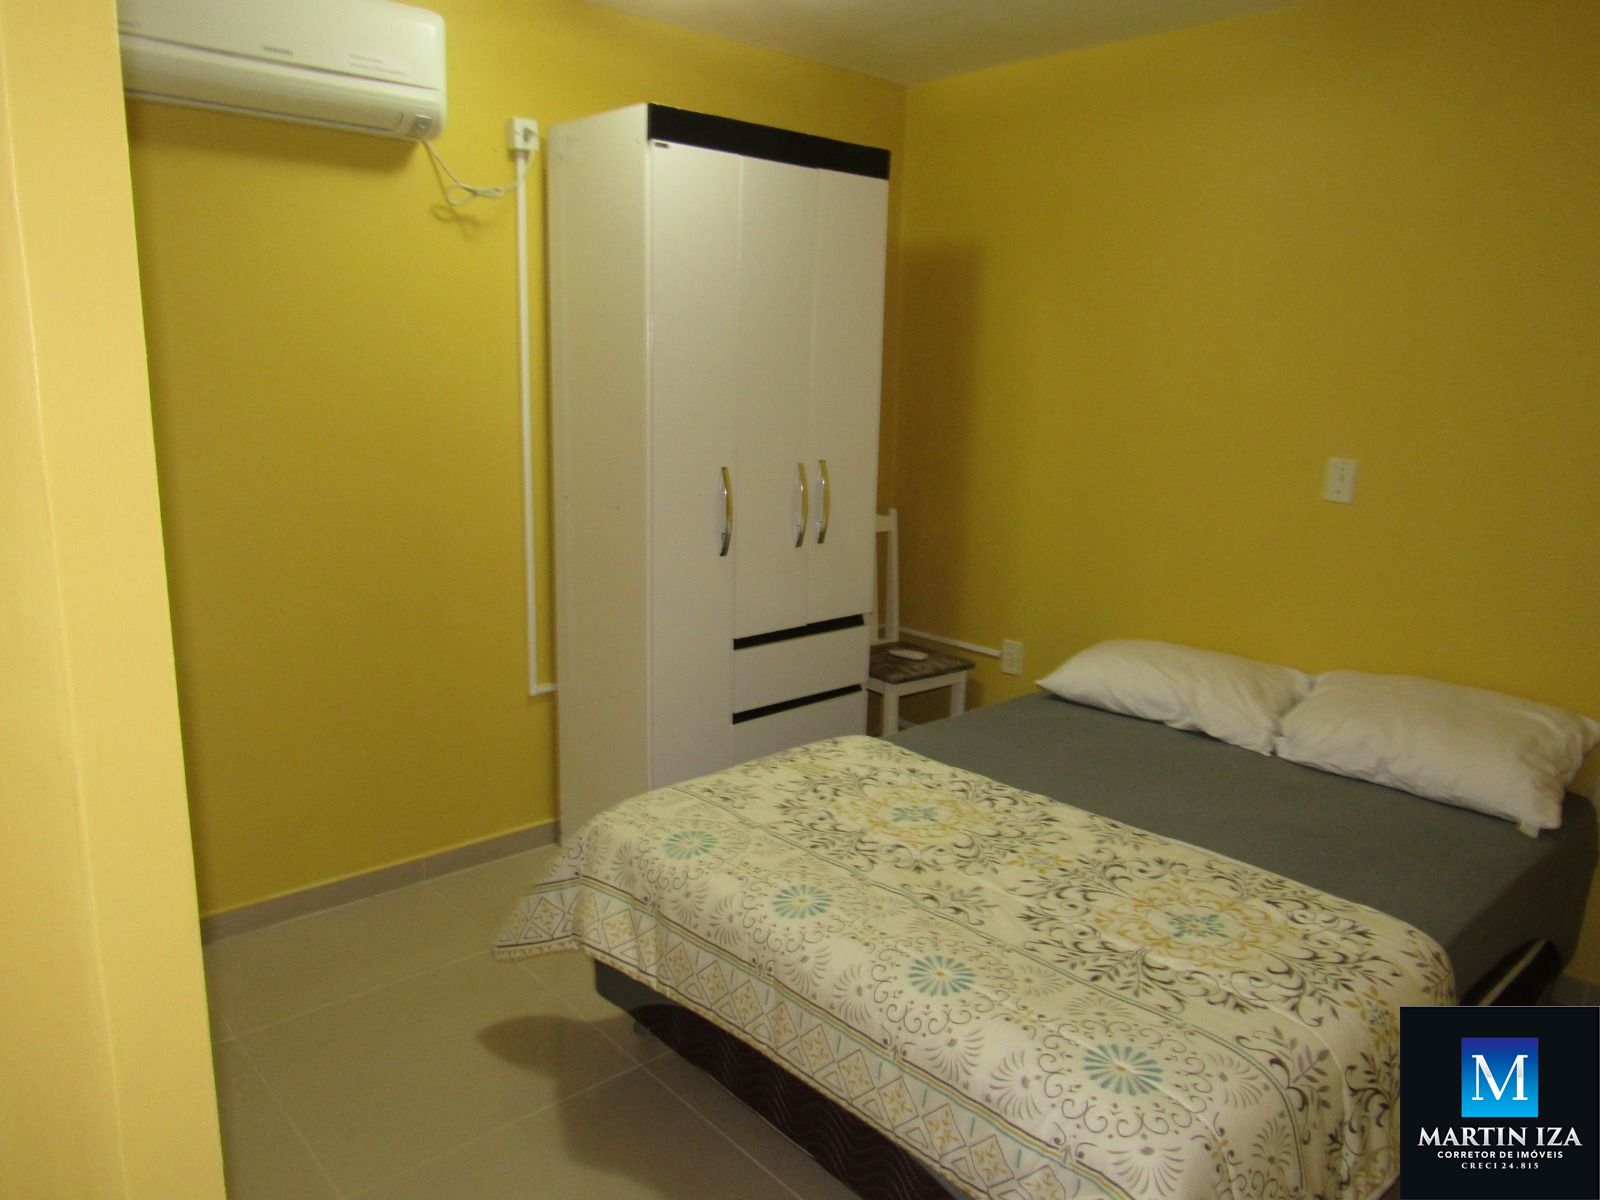 Apartamento com 1 Dormitórios para alugar, 45 m² por R$ 150,00